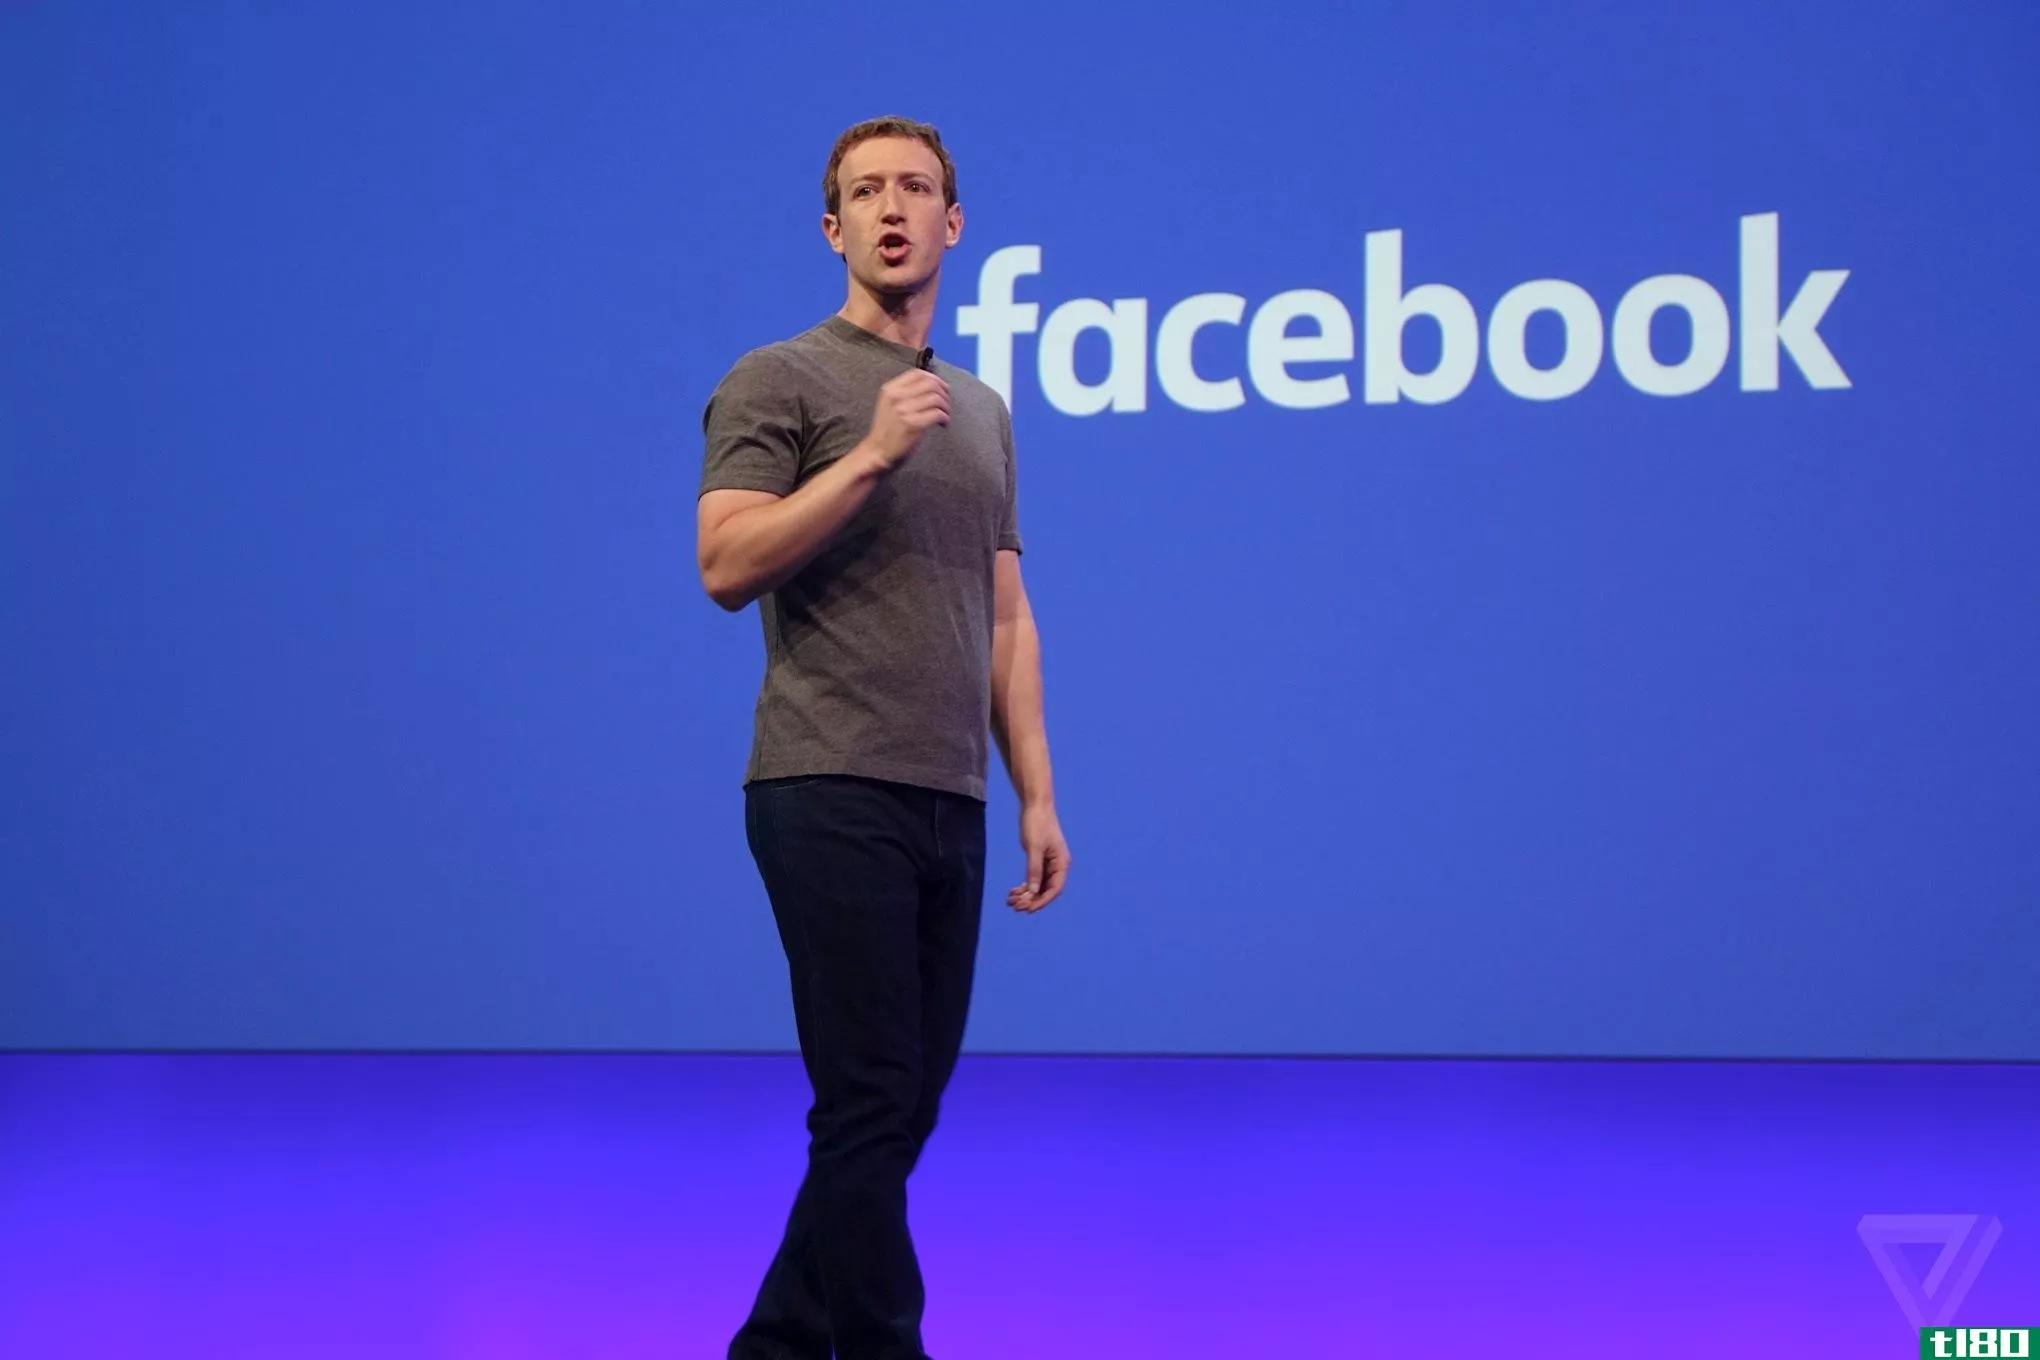 扎克伯格在与保守派会面后称facebook是“所有想法的平台”